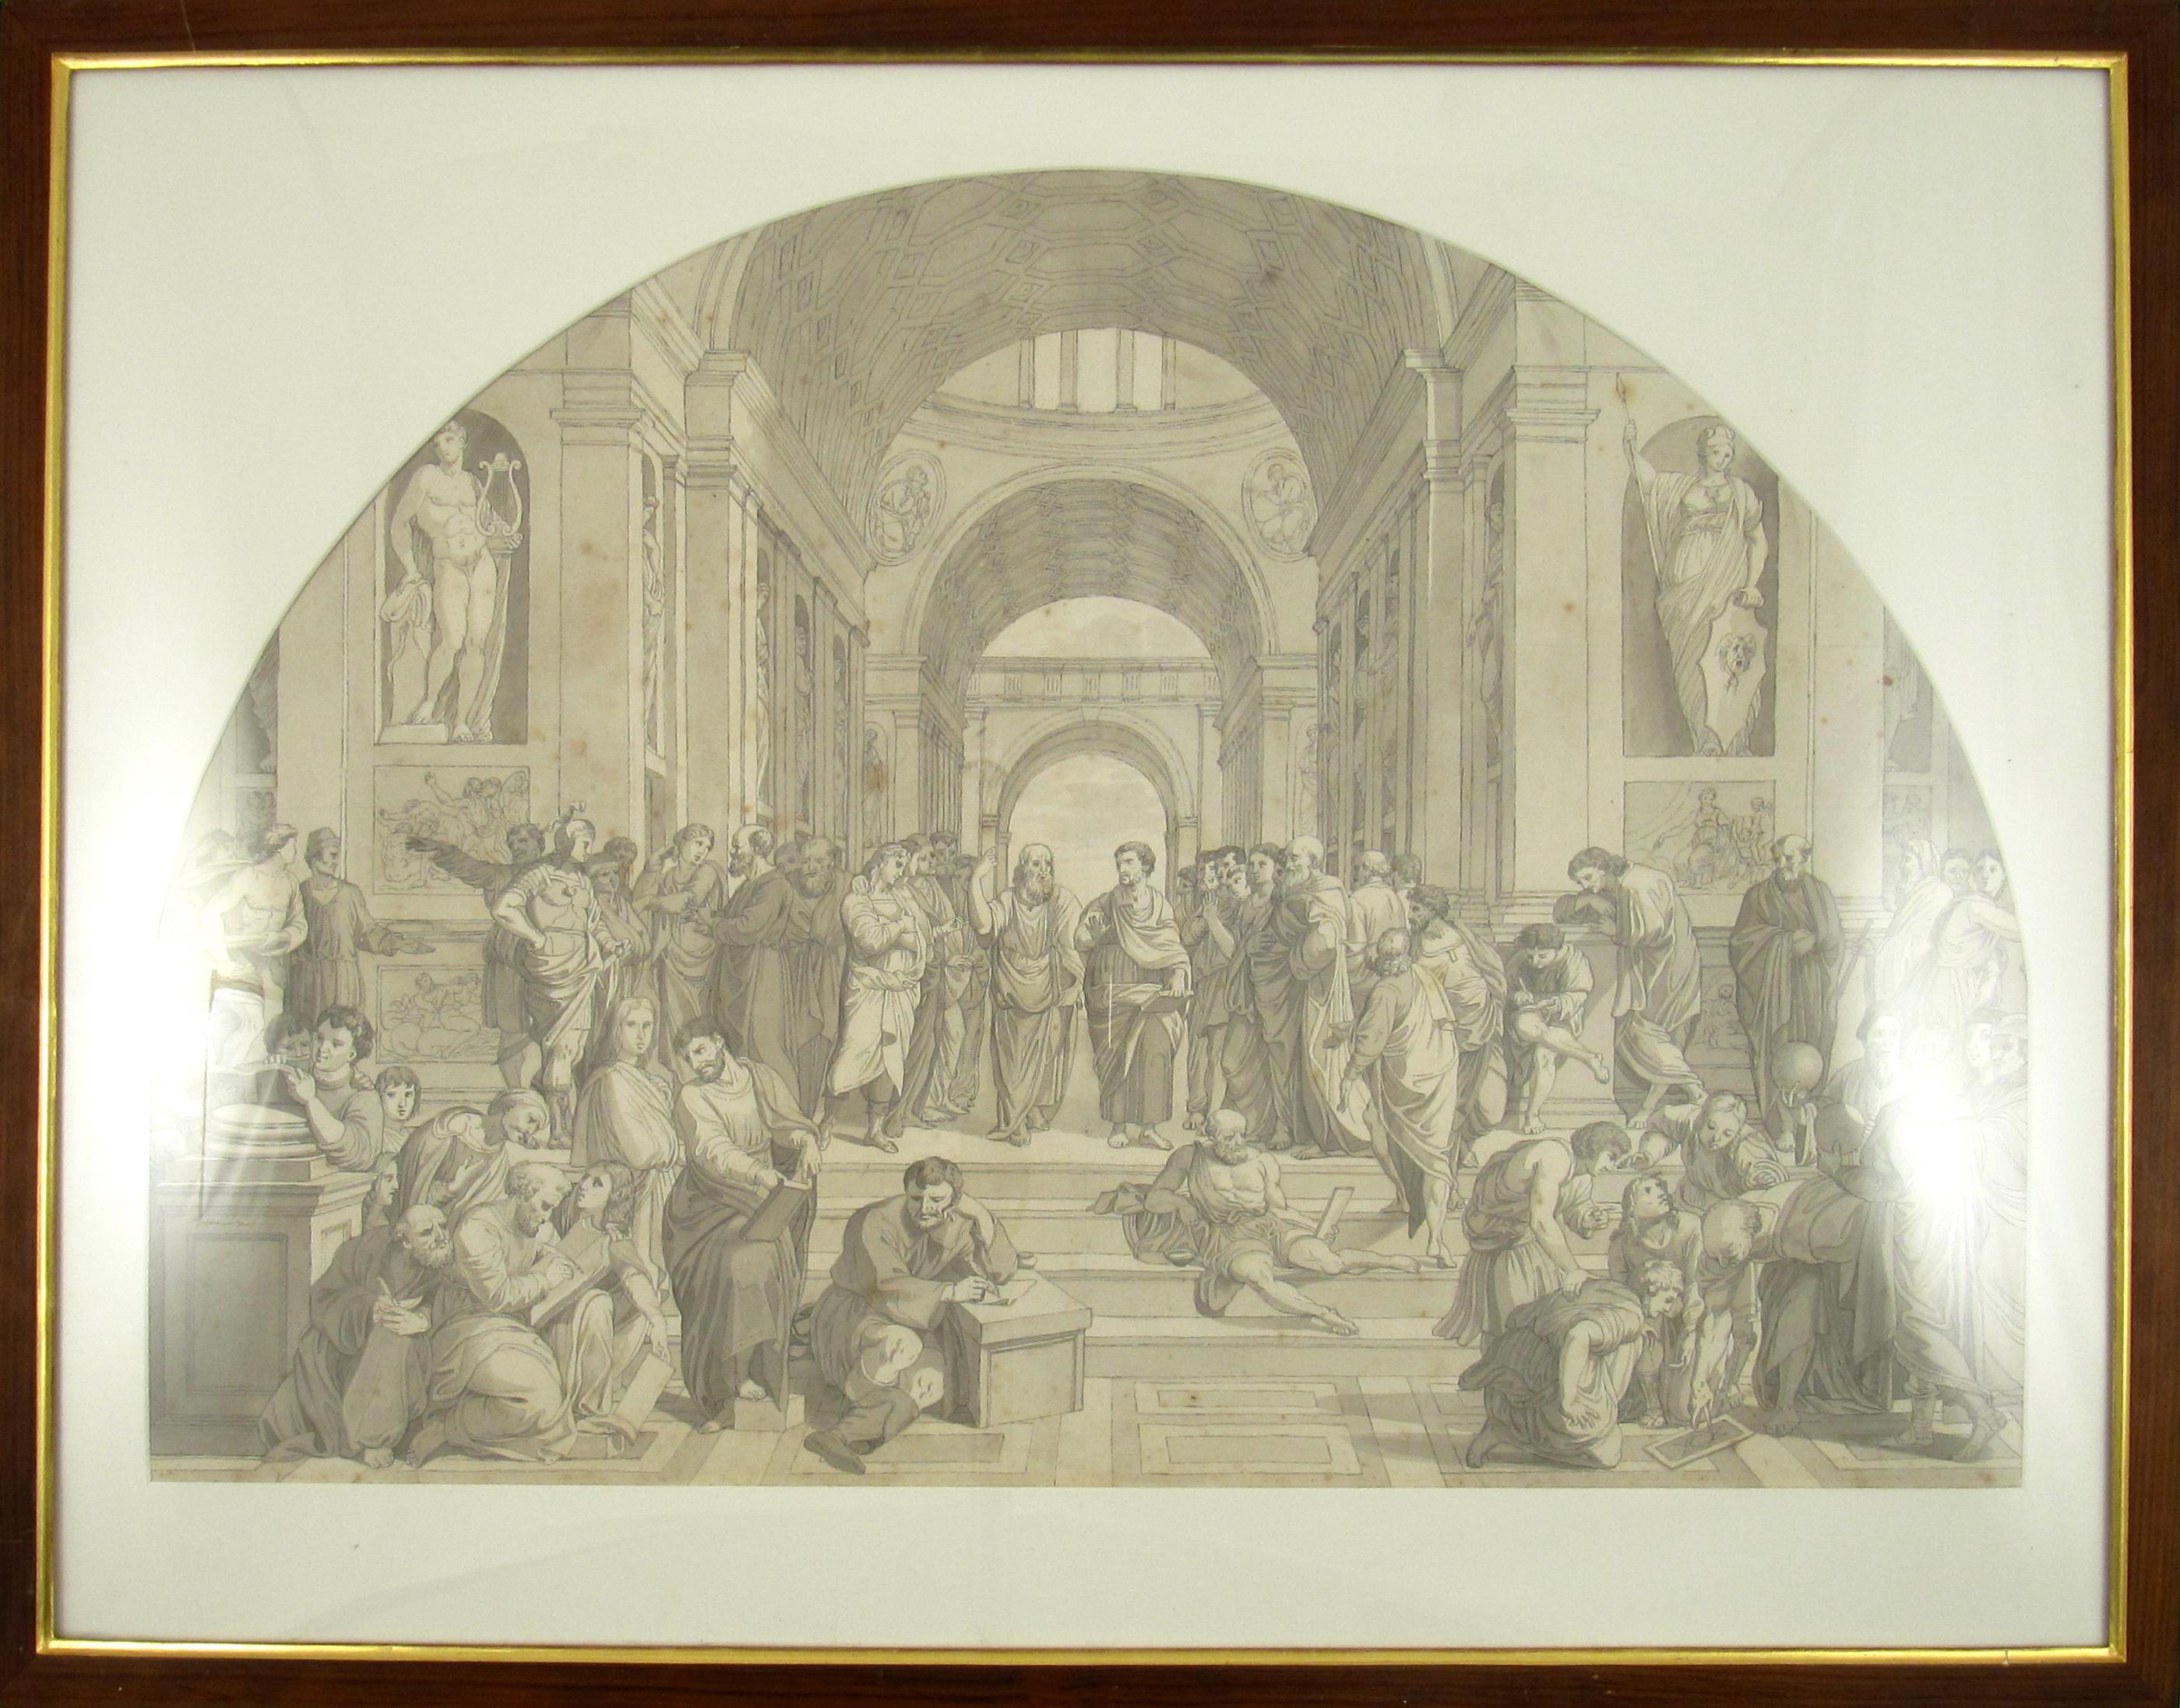 (after) Raphael (Raffaello Sanzio da Urbino) Figurative Art – Schule von Athen nach Raphael – Zeichnung mit Bleistift und Tusche, 18. Jahrhundert